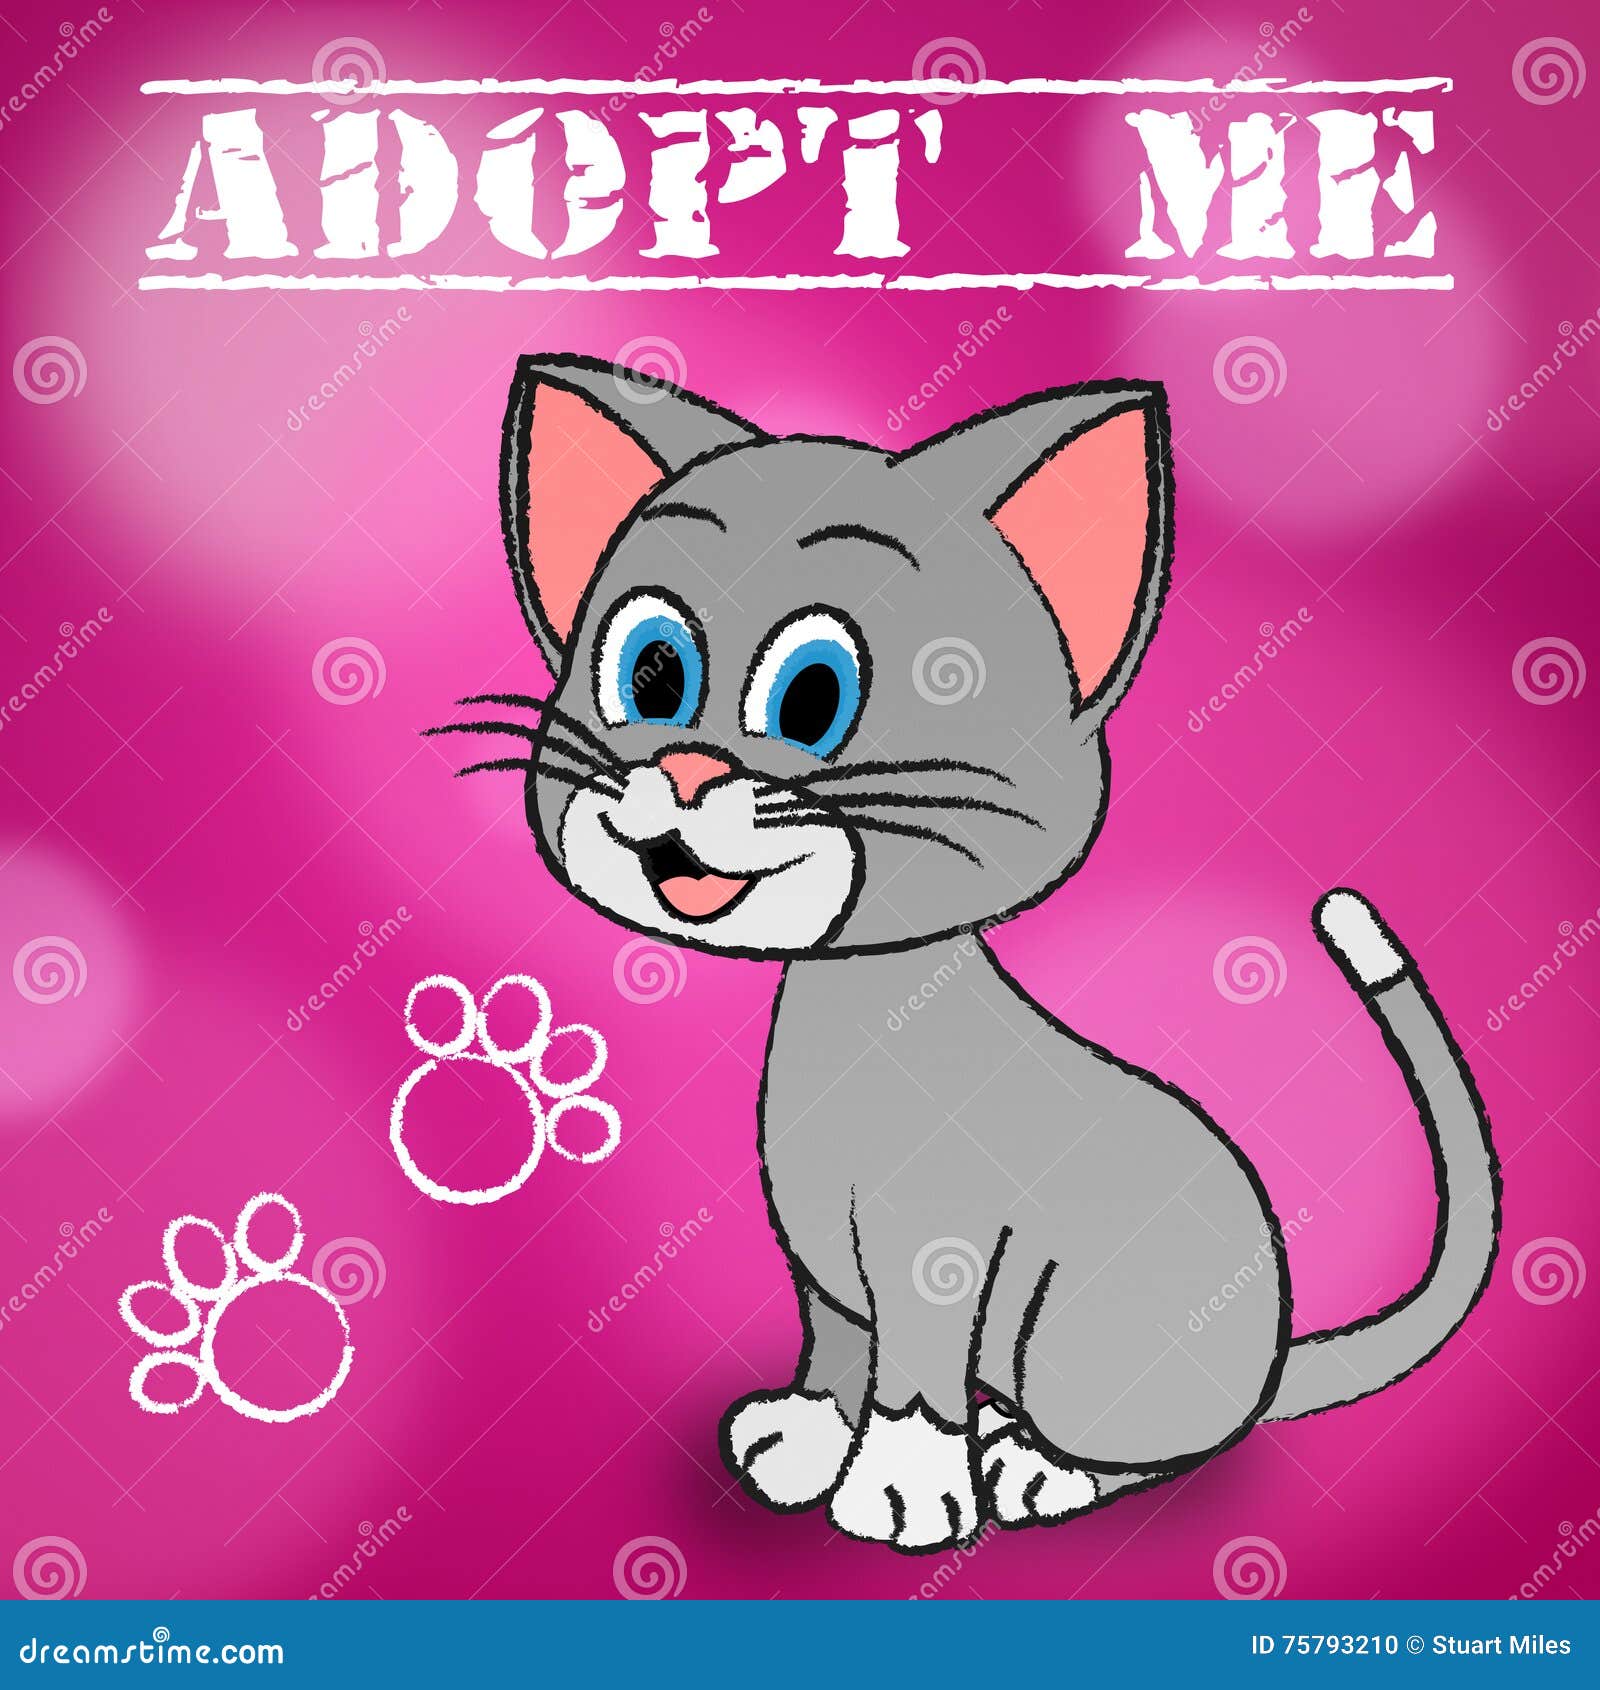 adopt cat indicates adoption felines and pet